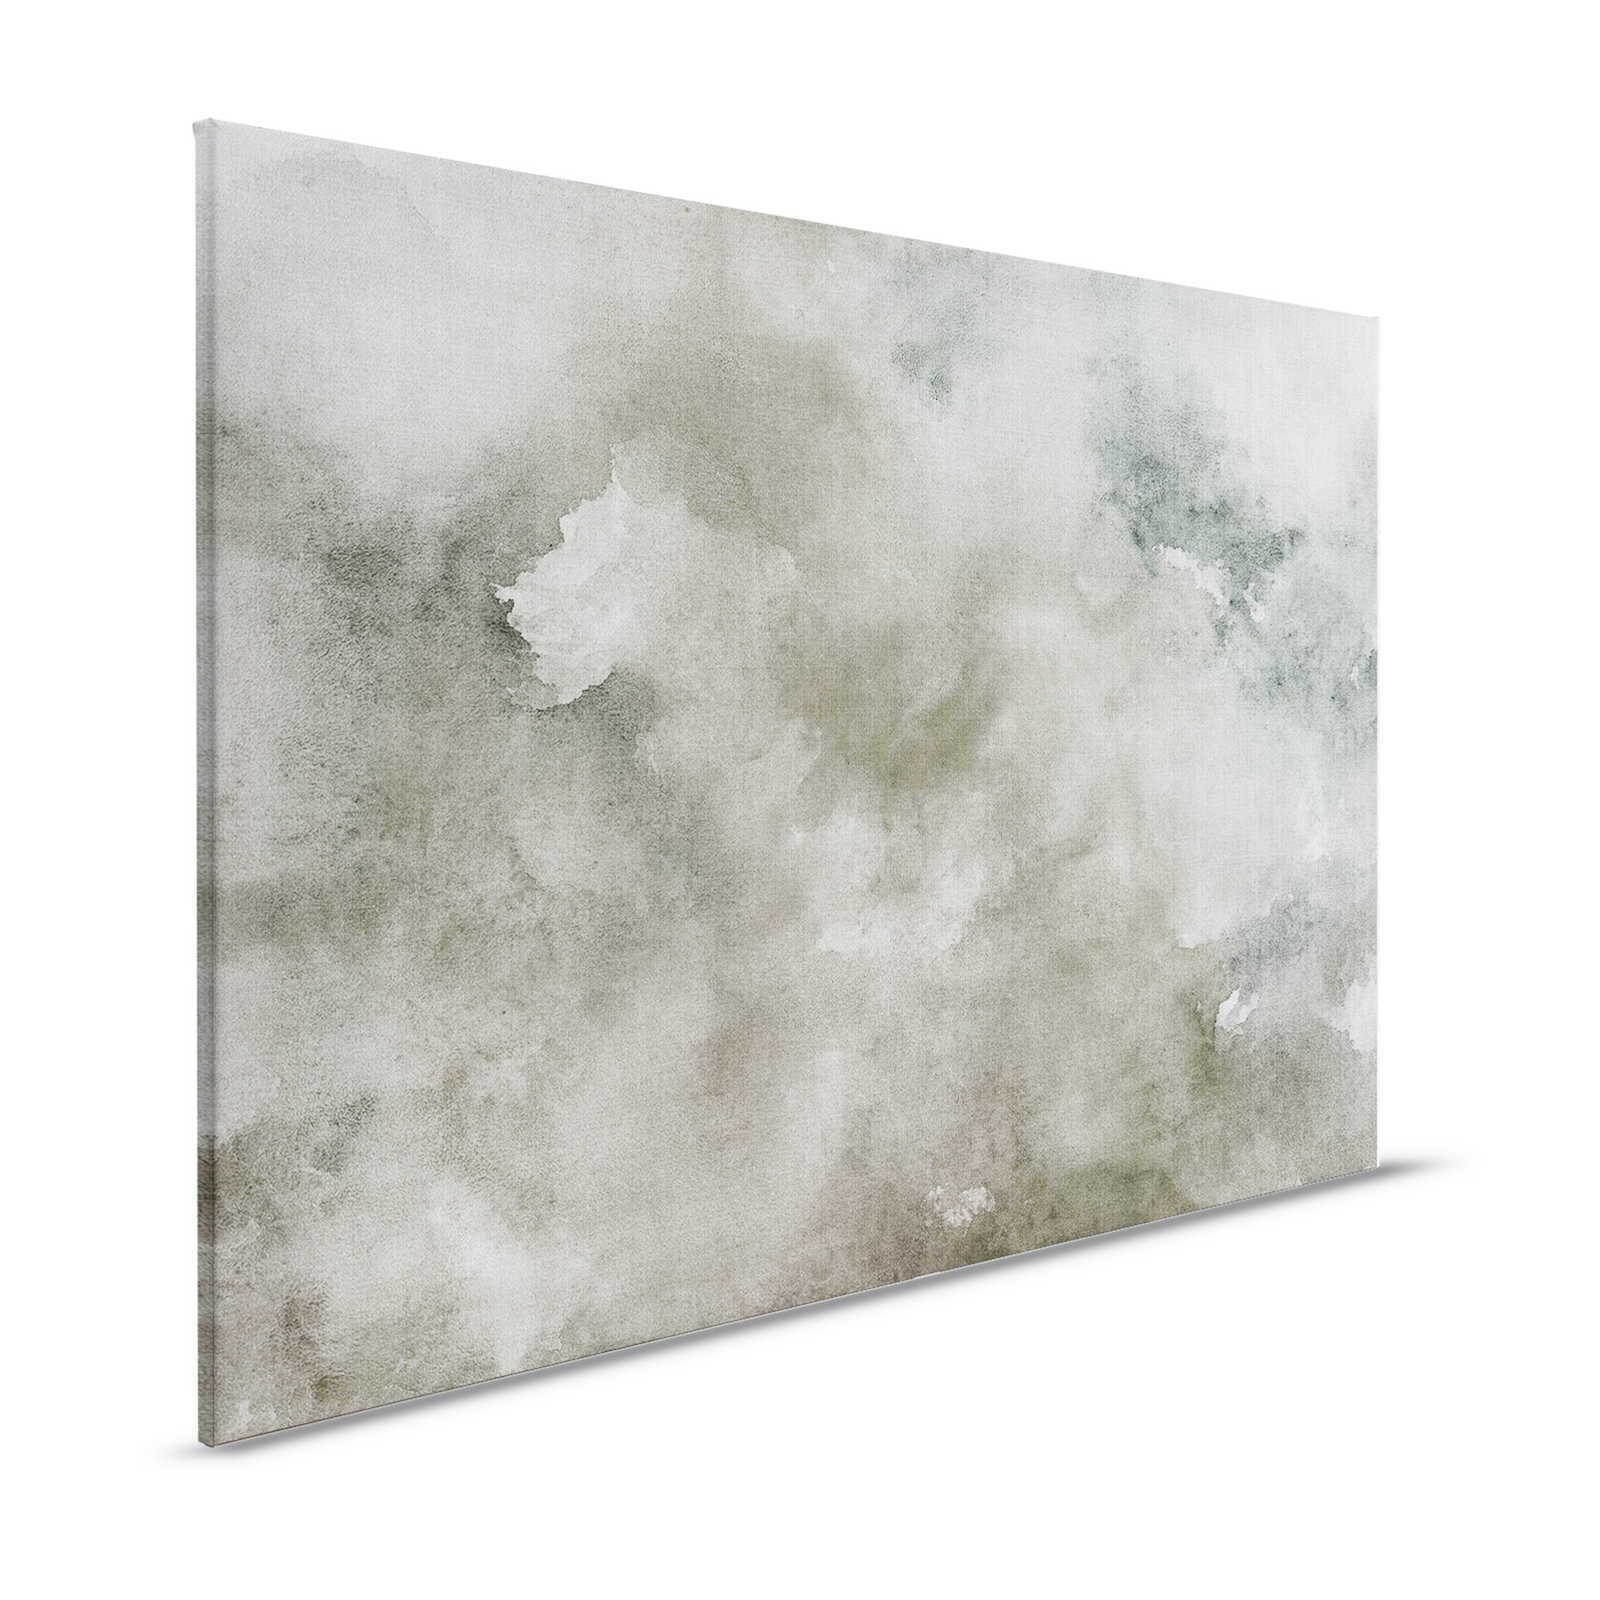 Acquerelli 1 - Quadro su tela ad acquerello grigio in lino naturale - 1,20 m x 0,80 m
